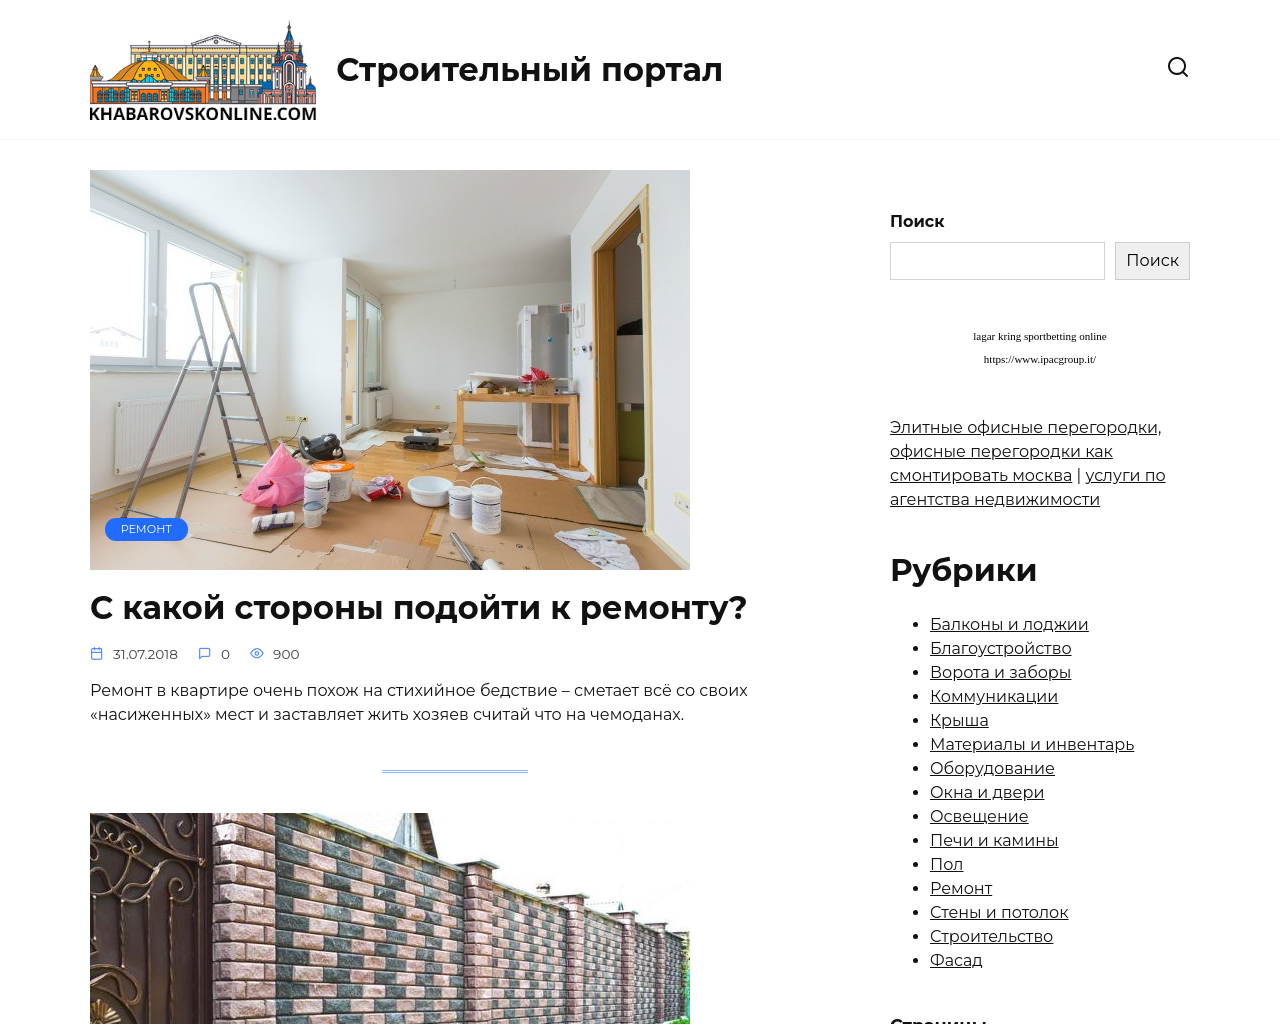 khabarovskonline.com